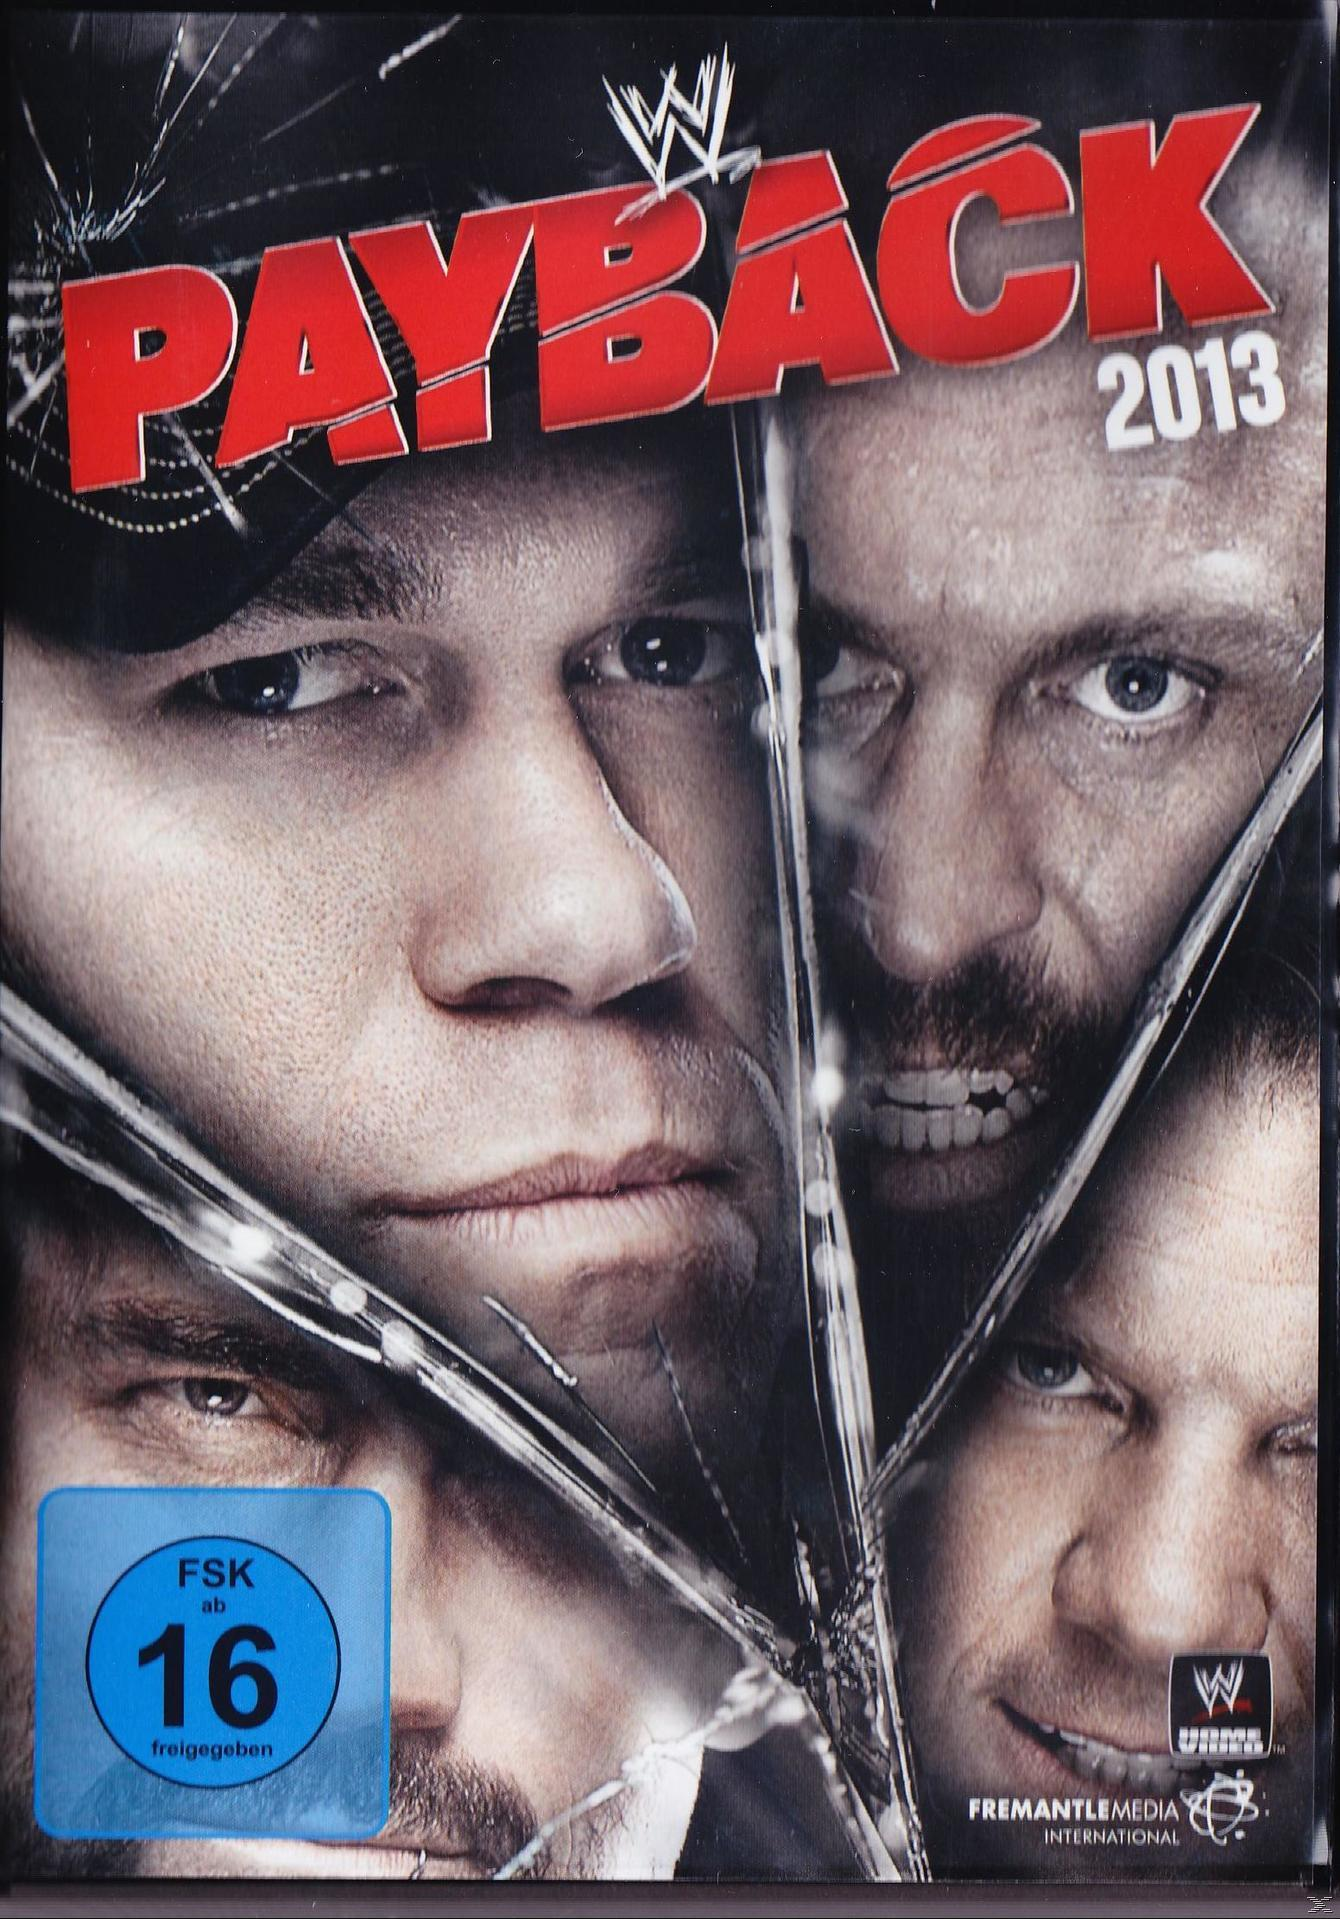 Payback 2013 - DVD WWE